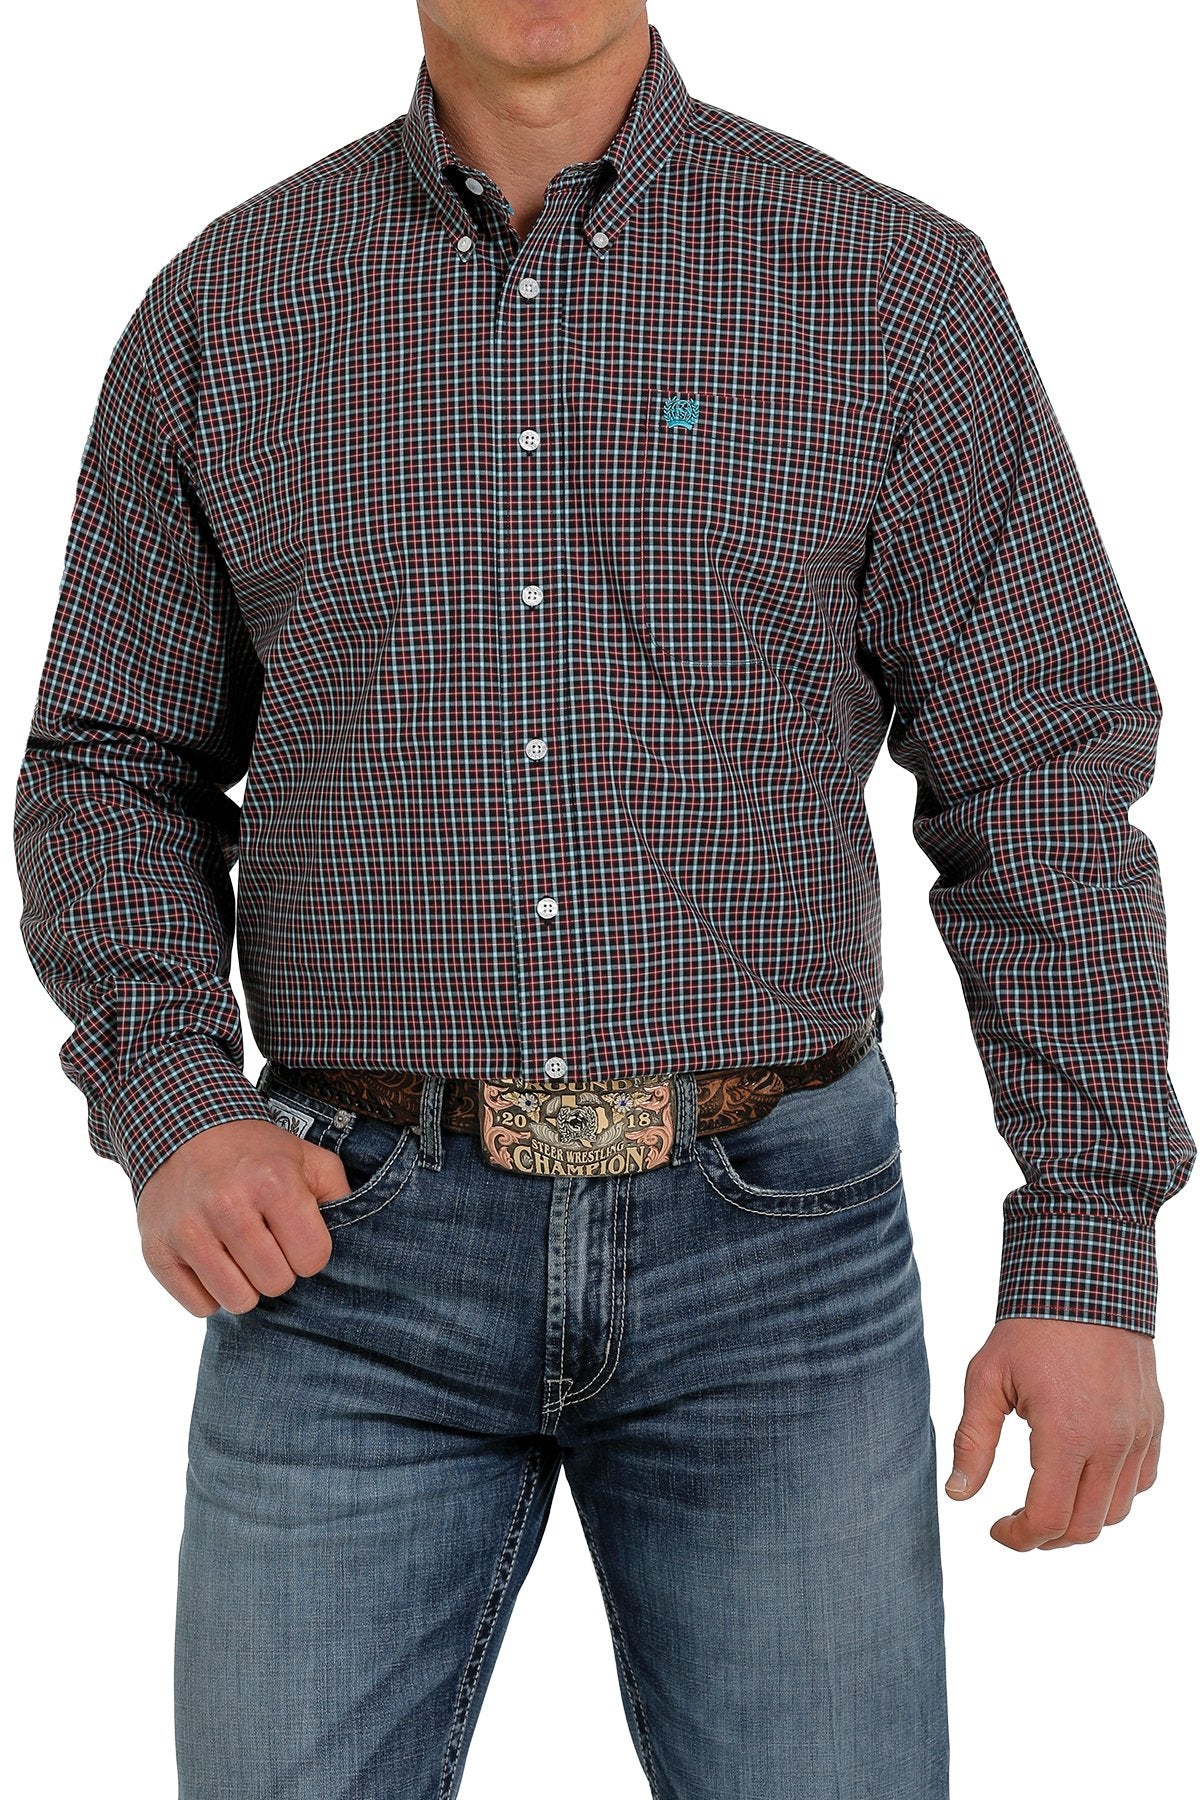 Cinch Mens Navy/ Turquoise/ Cranberry Plaid Cotton L/S Shirt - MTW1105360